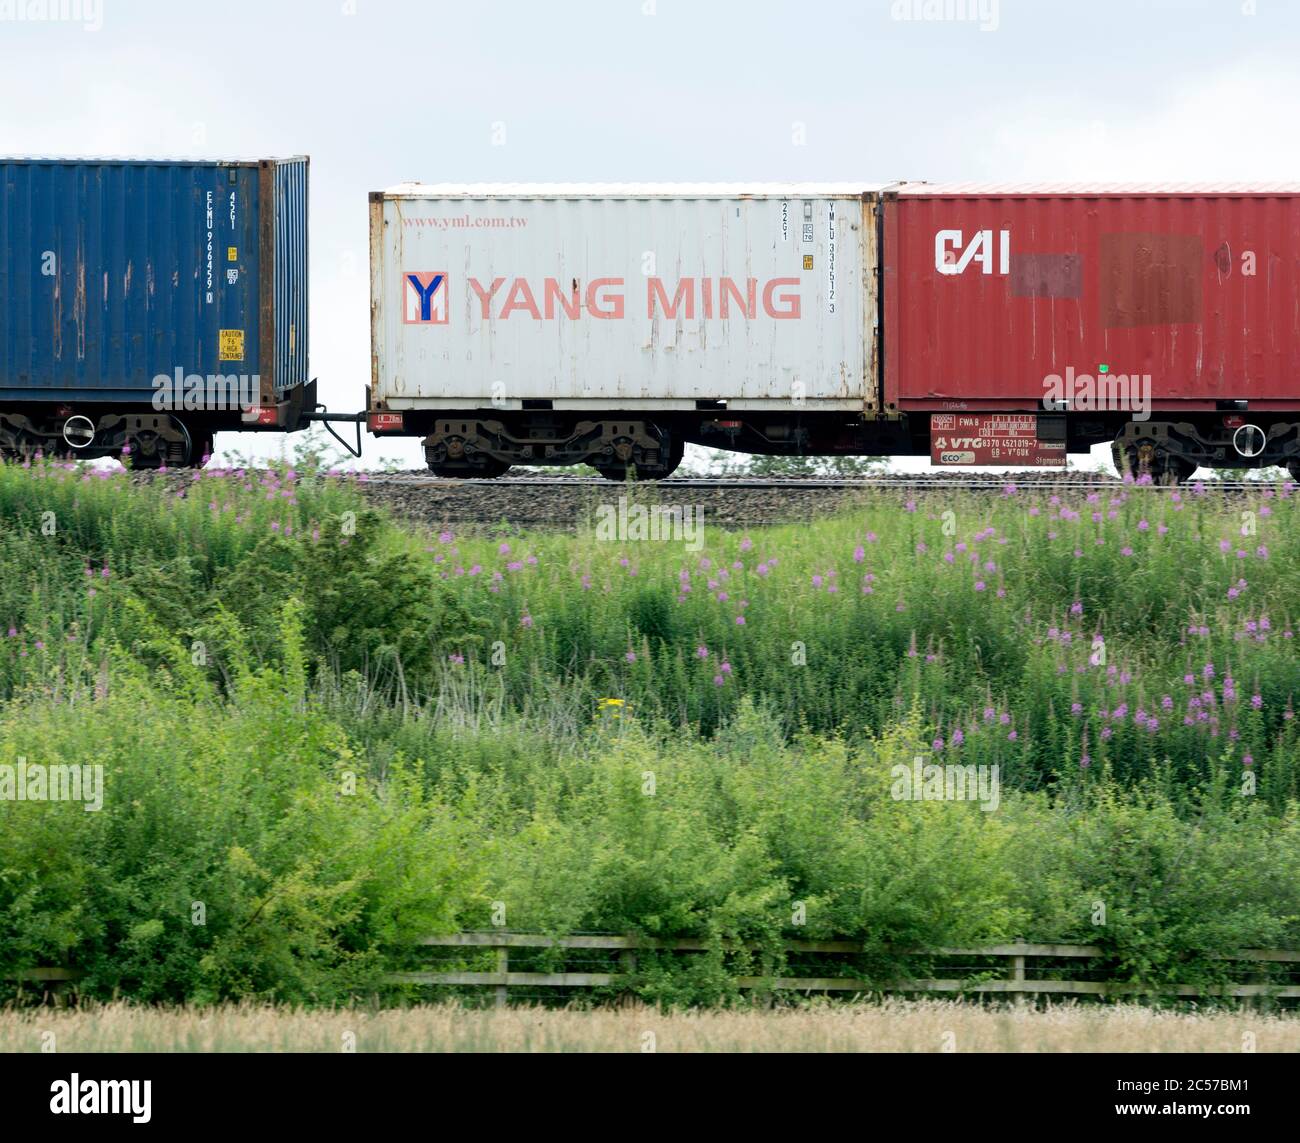 Contenitore per spedizioni Yang Ming su un treno freightliner, Warwickshire, Regno Unito Foto Stock